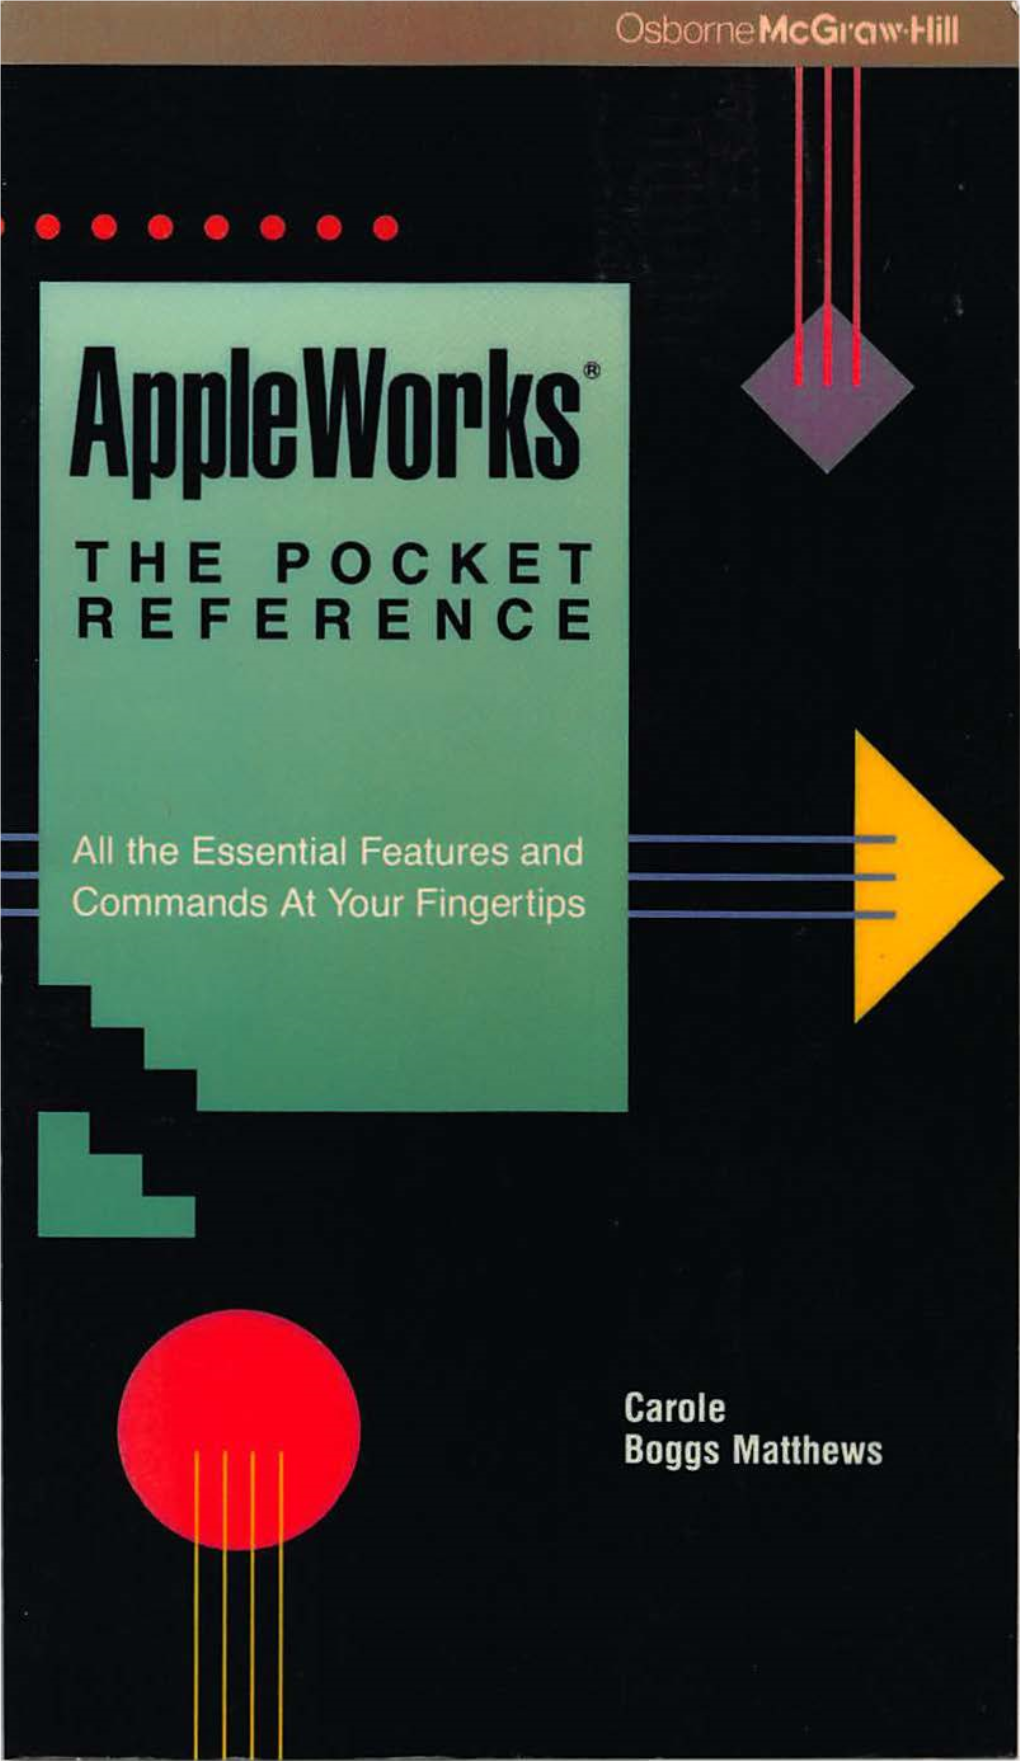 Appleworks the Pocket Reference 1988 2.Pdf